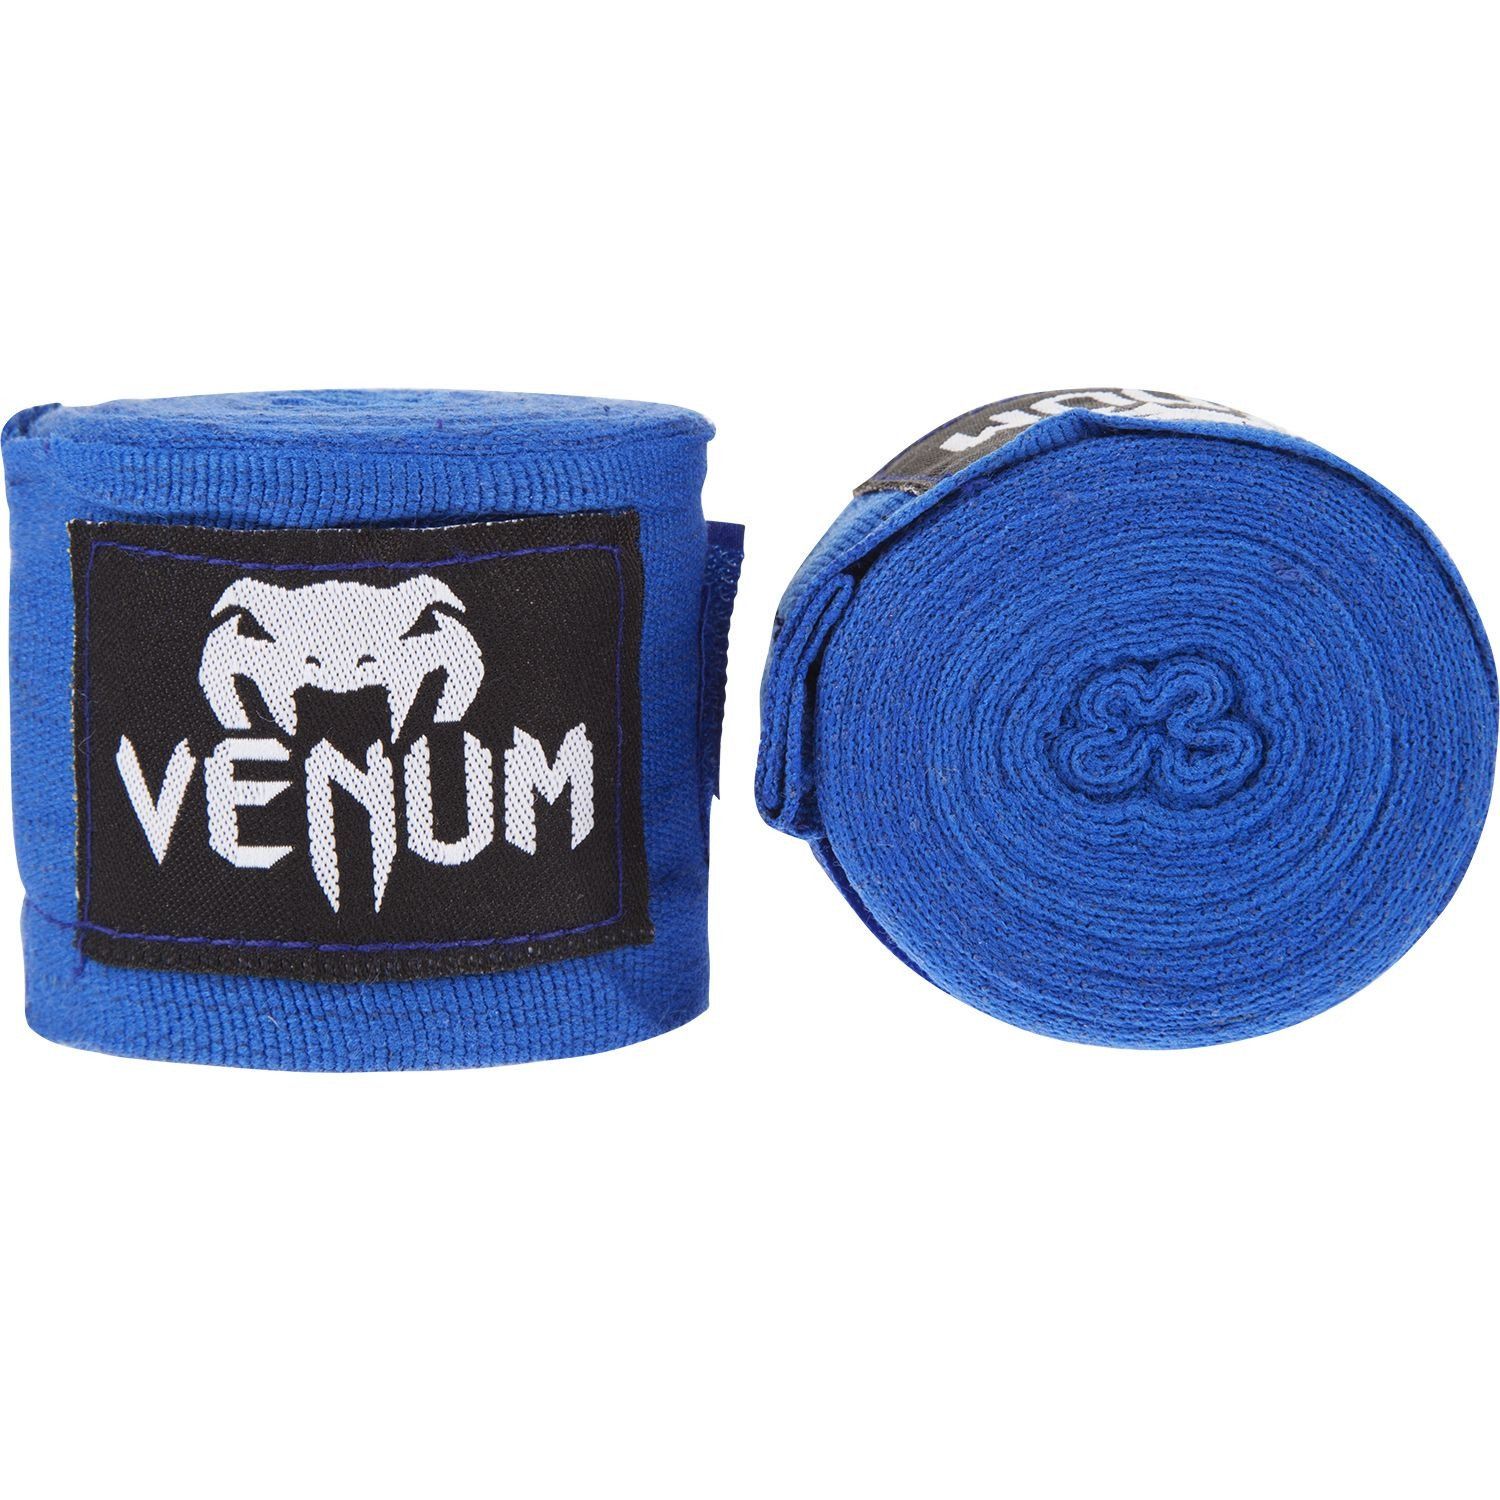 Fasce da boxe Venum Kontact - Original - 4 m - Blu